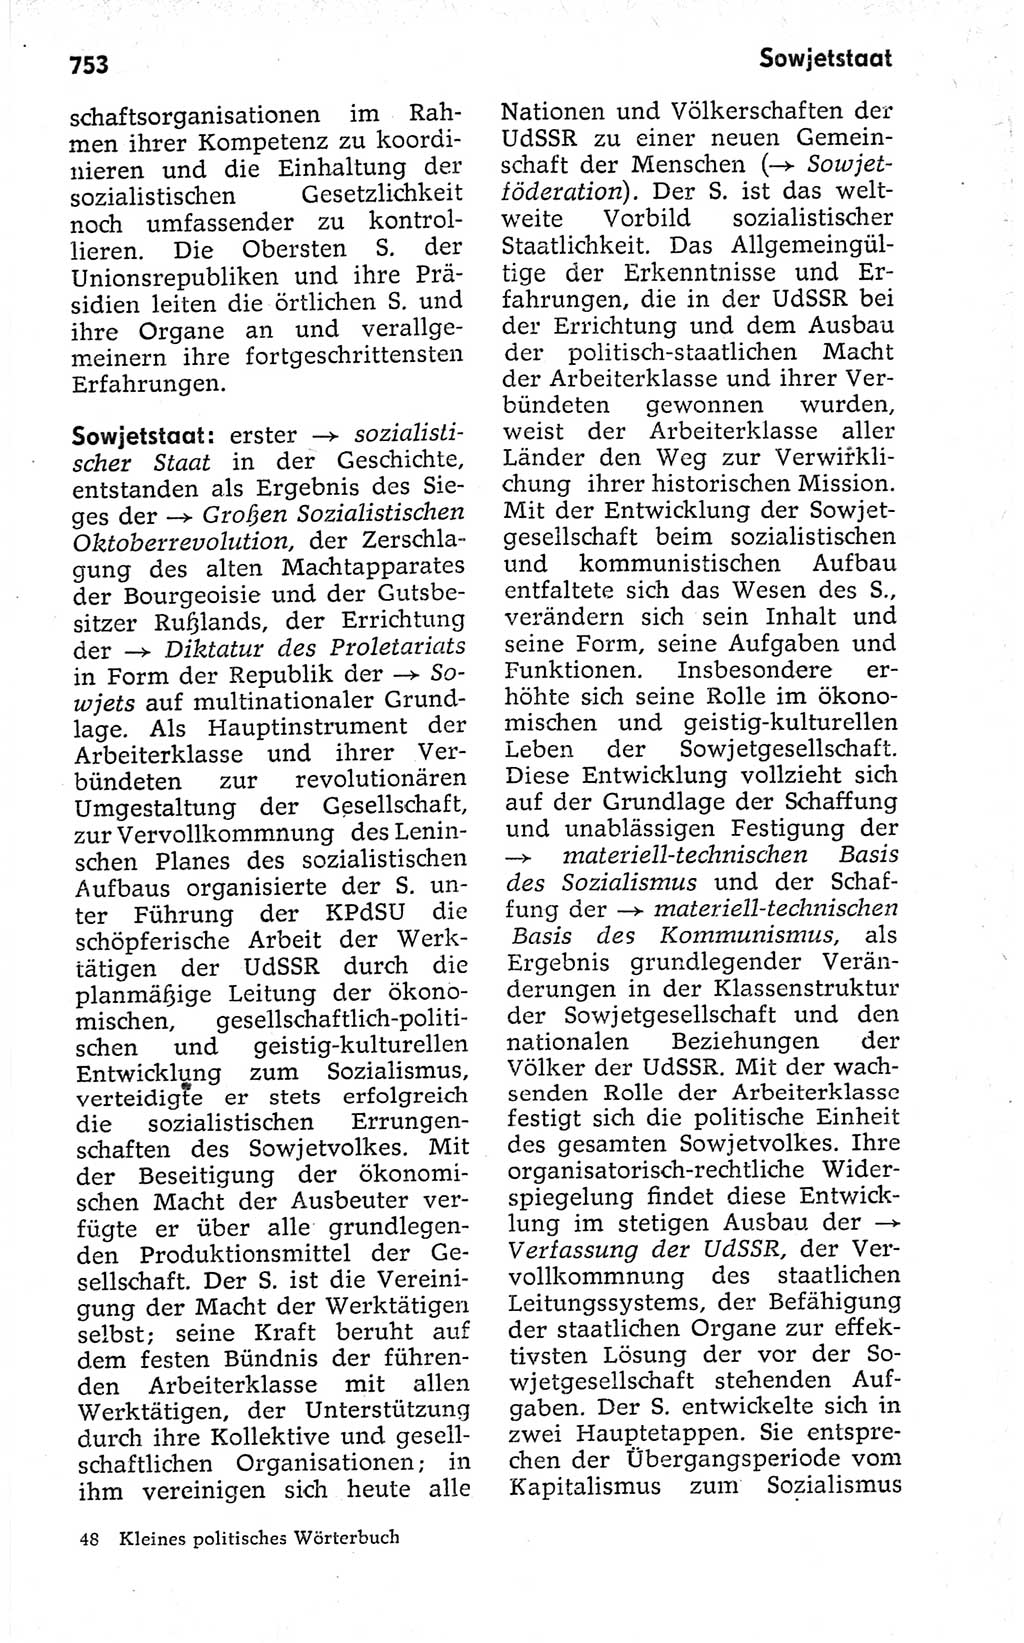 Kleines politisches Wörterbuch [Deutsche Demokratische Republik (DDR)] 1973, Seite 753 (Kl. pol. Wb. DDR 1973, S. 753)